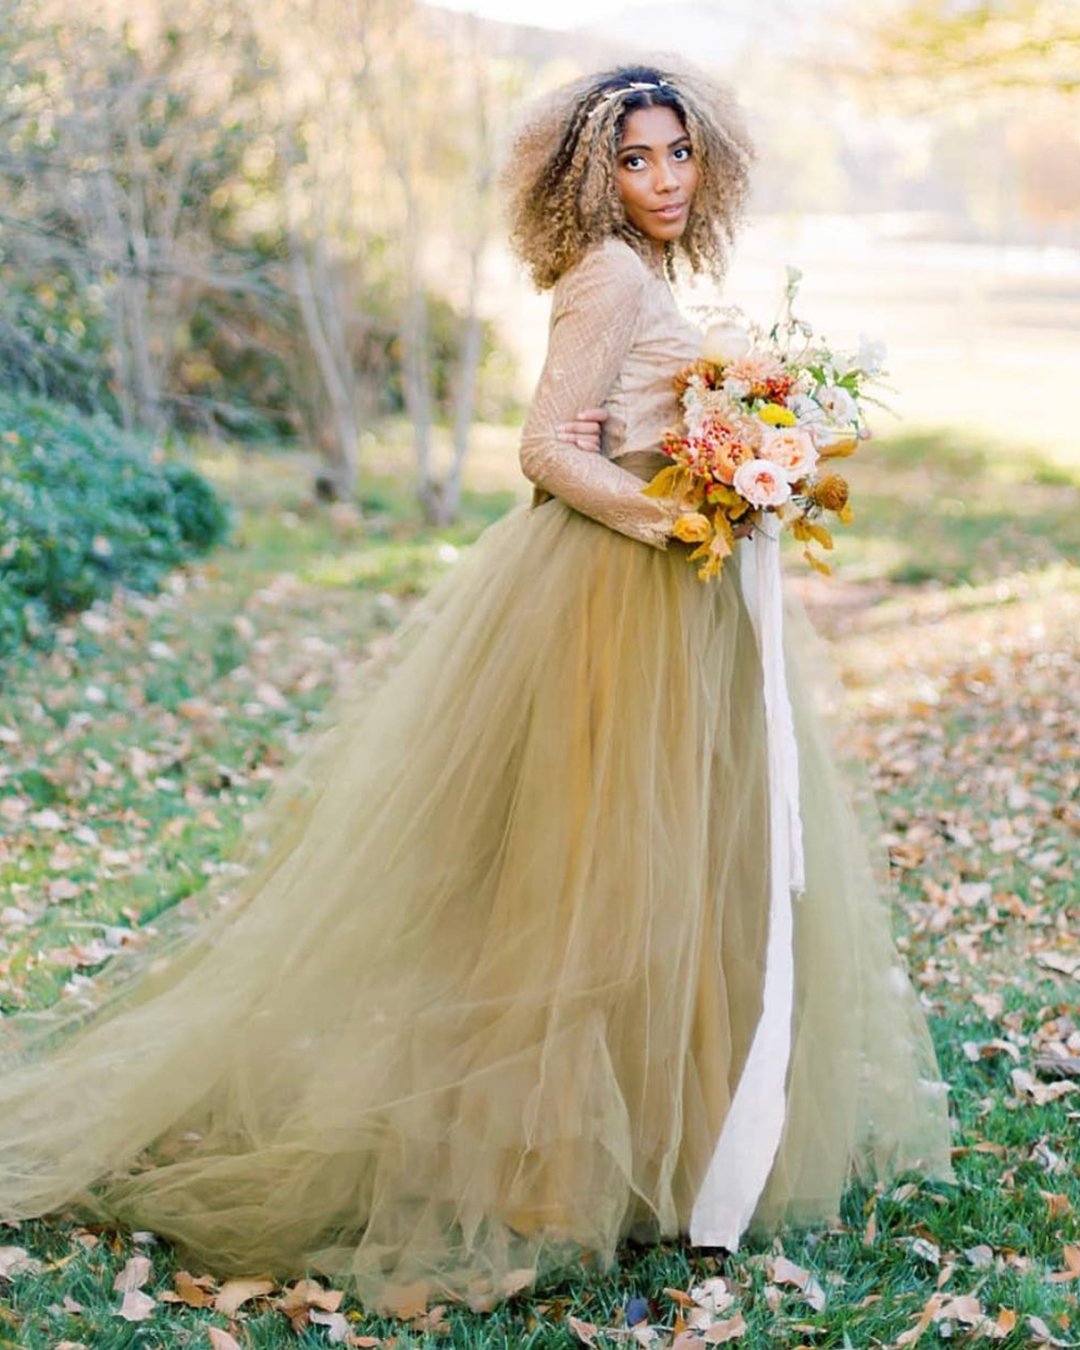 colourful wedding dresses yellow tulle skirt edenluxe